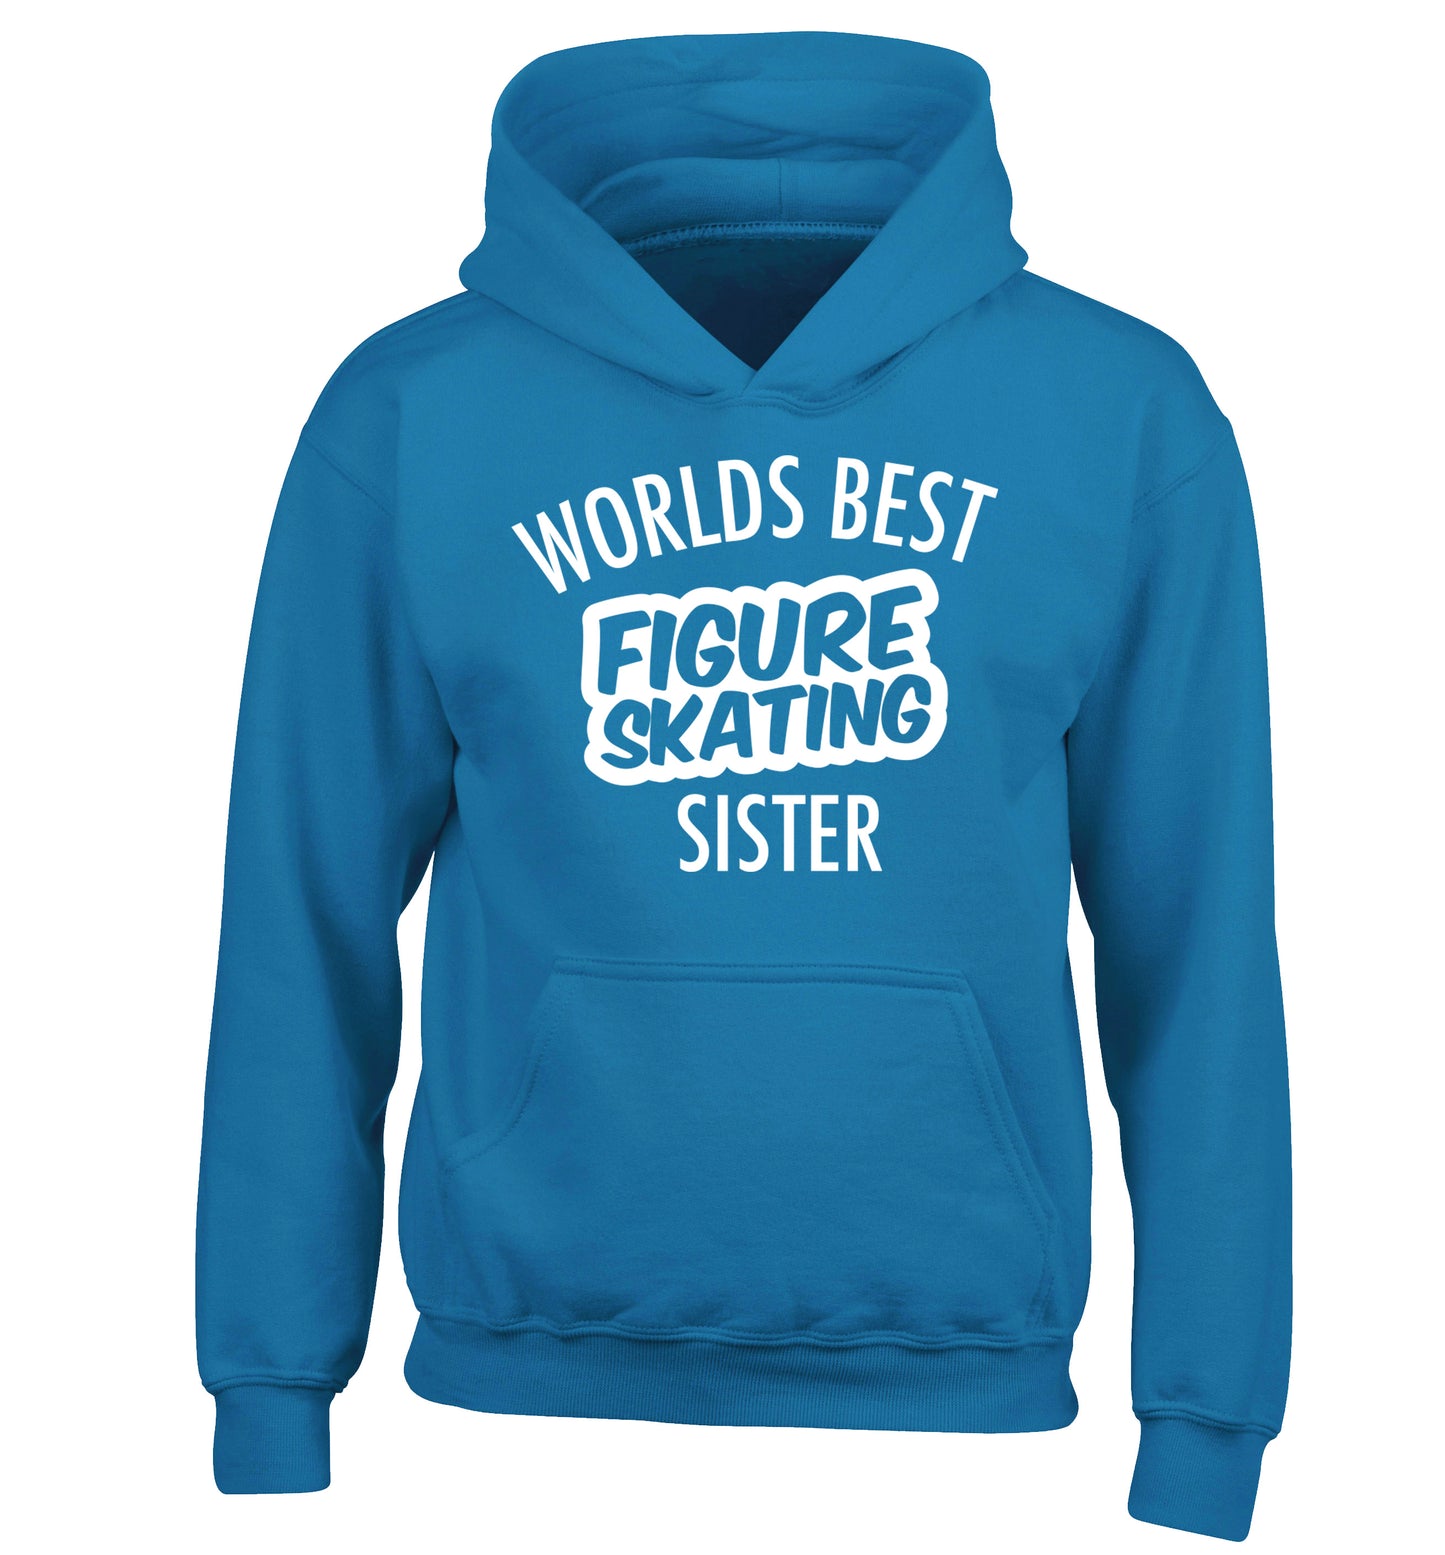 Worlds best figure skating sisterchildren's blue hoodie 12-14 Years